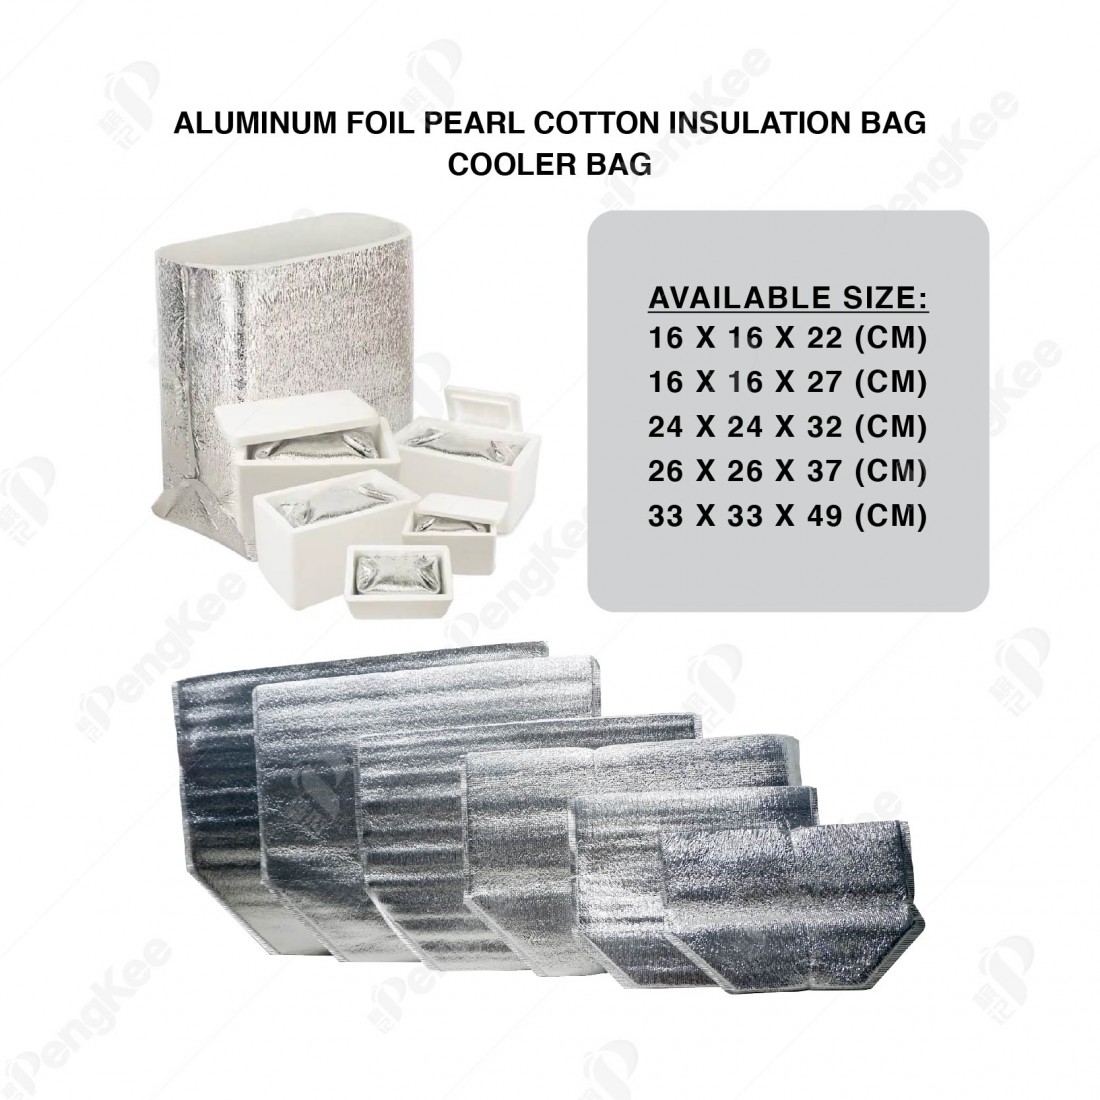 ALUMINUM FOIL PEARL COTTON INSULATION BAG (L16 * W16 * H27CM +3MM) 铝箱珍珠保温袋 (20'S)